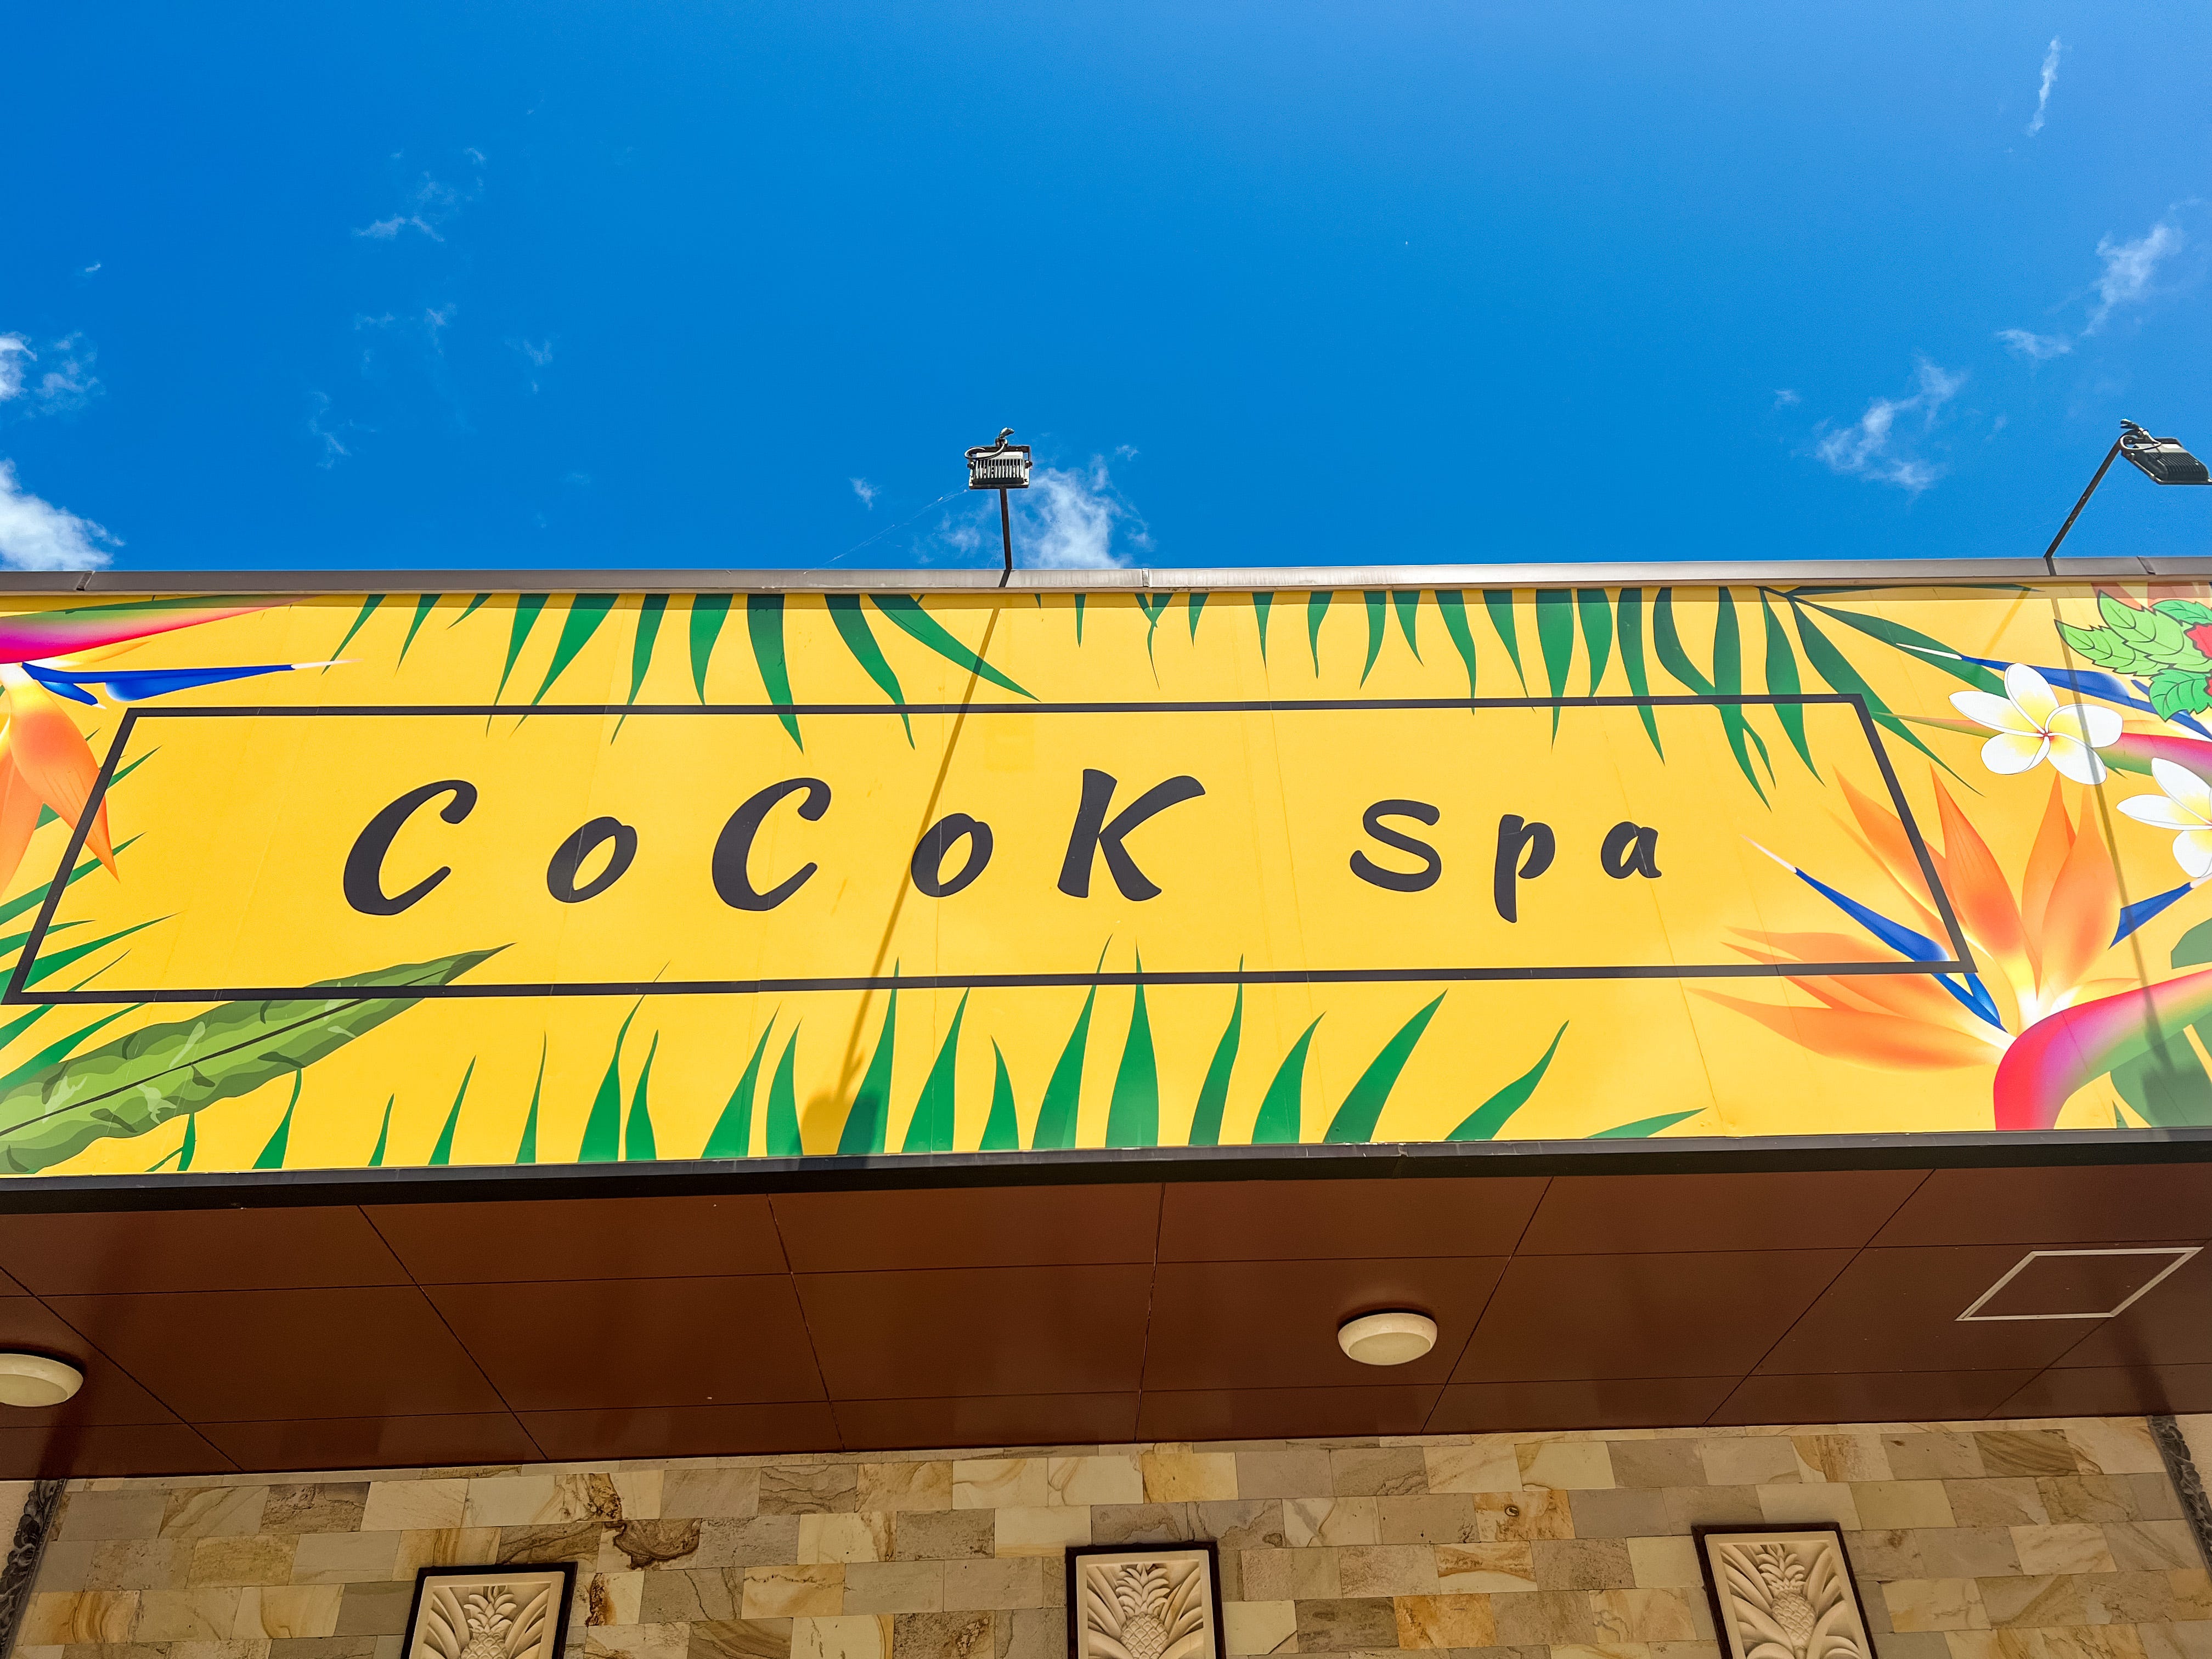 Cocok Spa in Okinawa, Japan